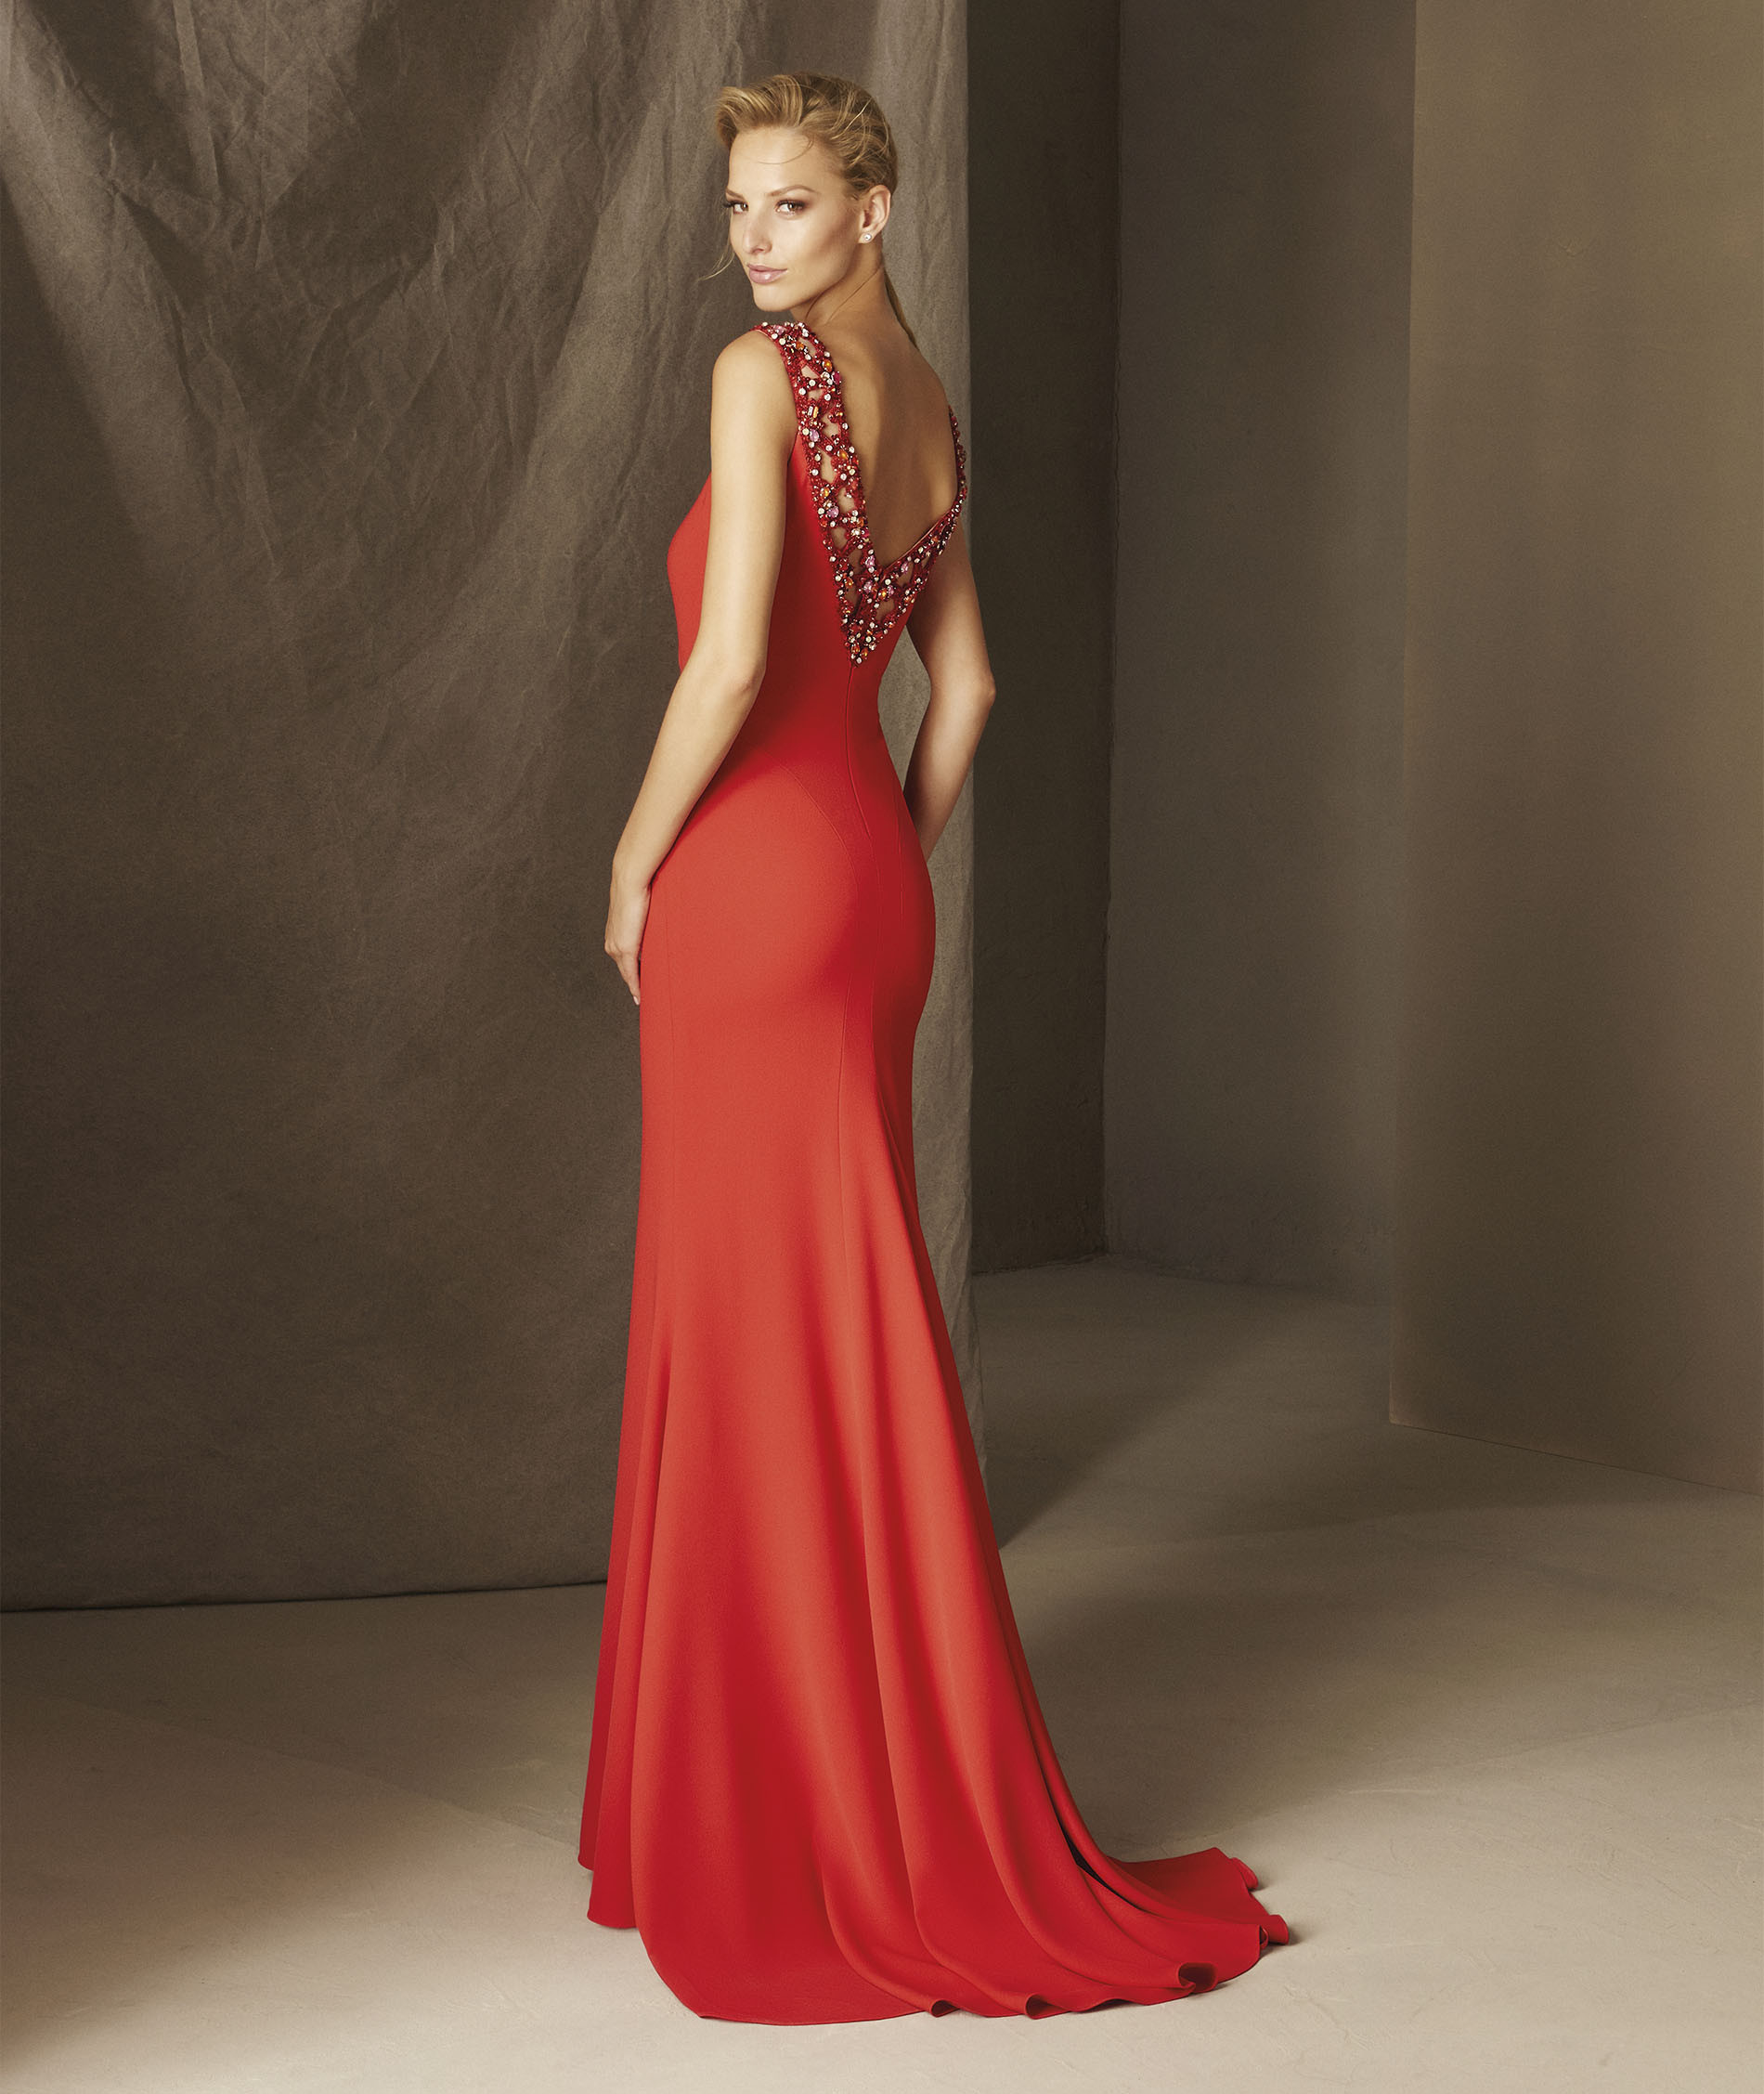 Vestido Pronovias rojo escote espalda pedreria